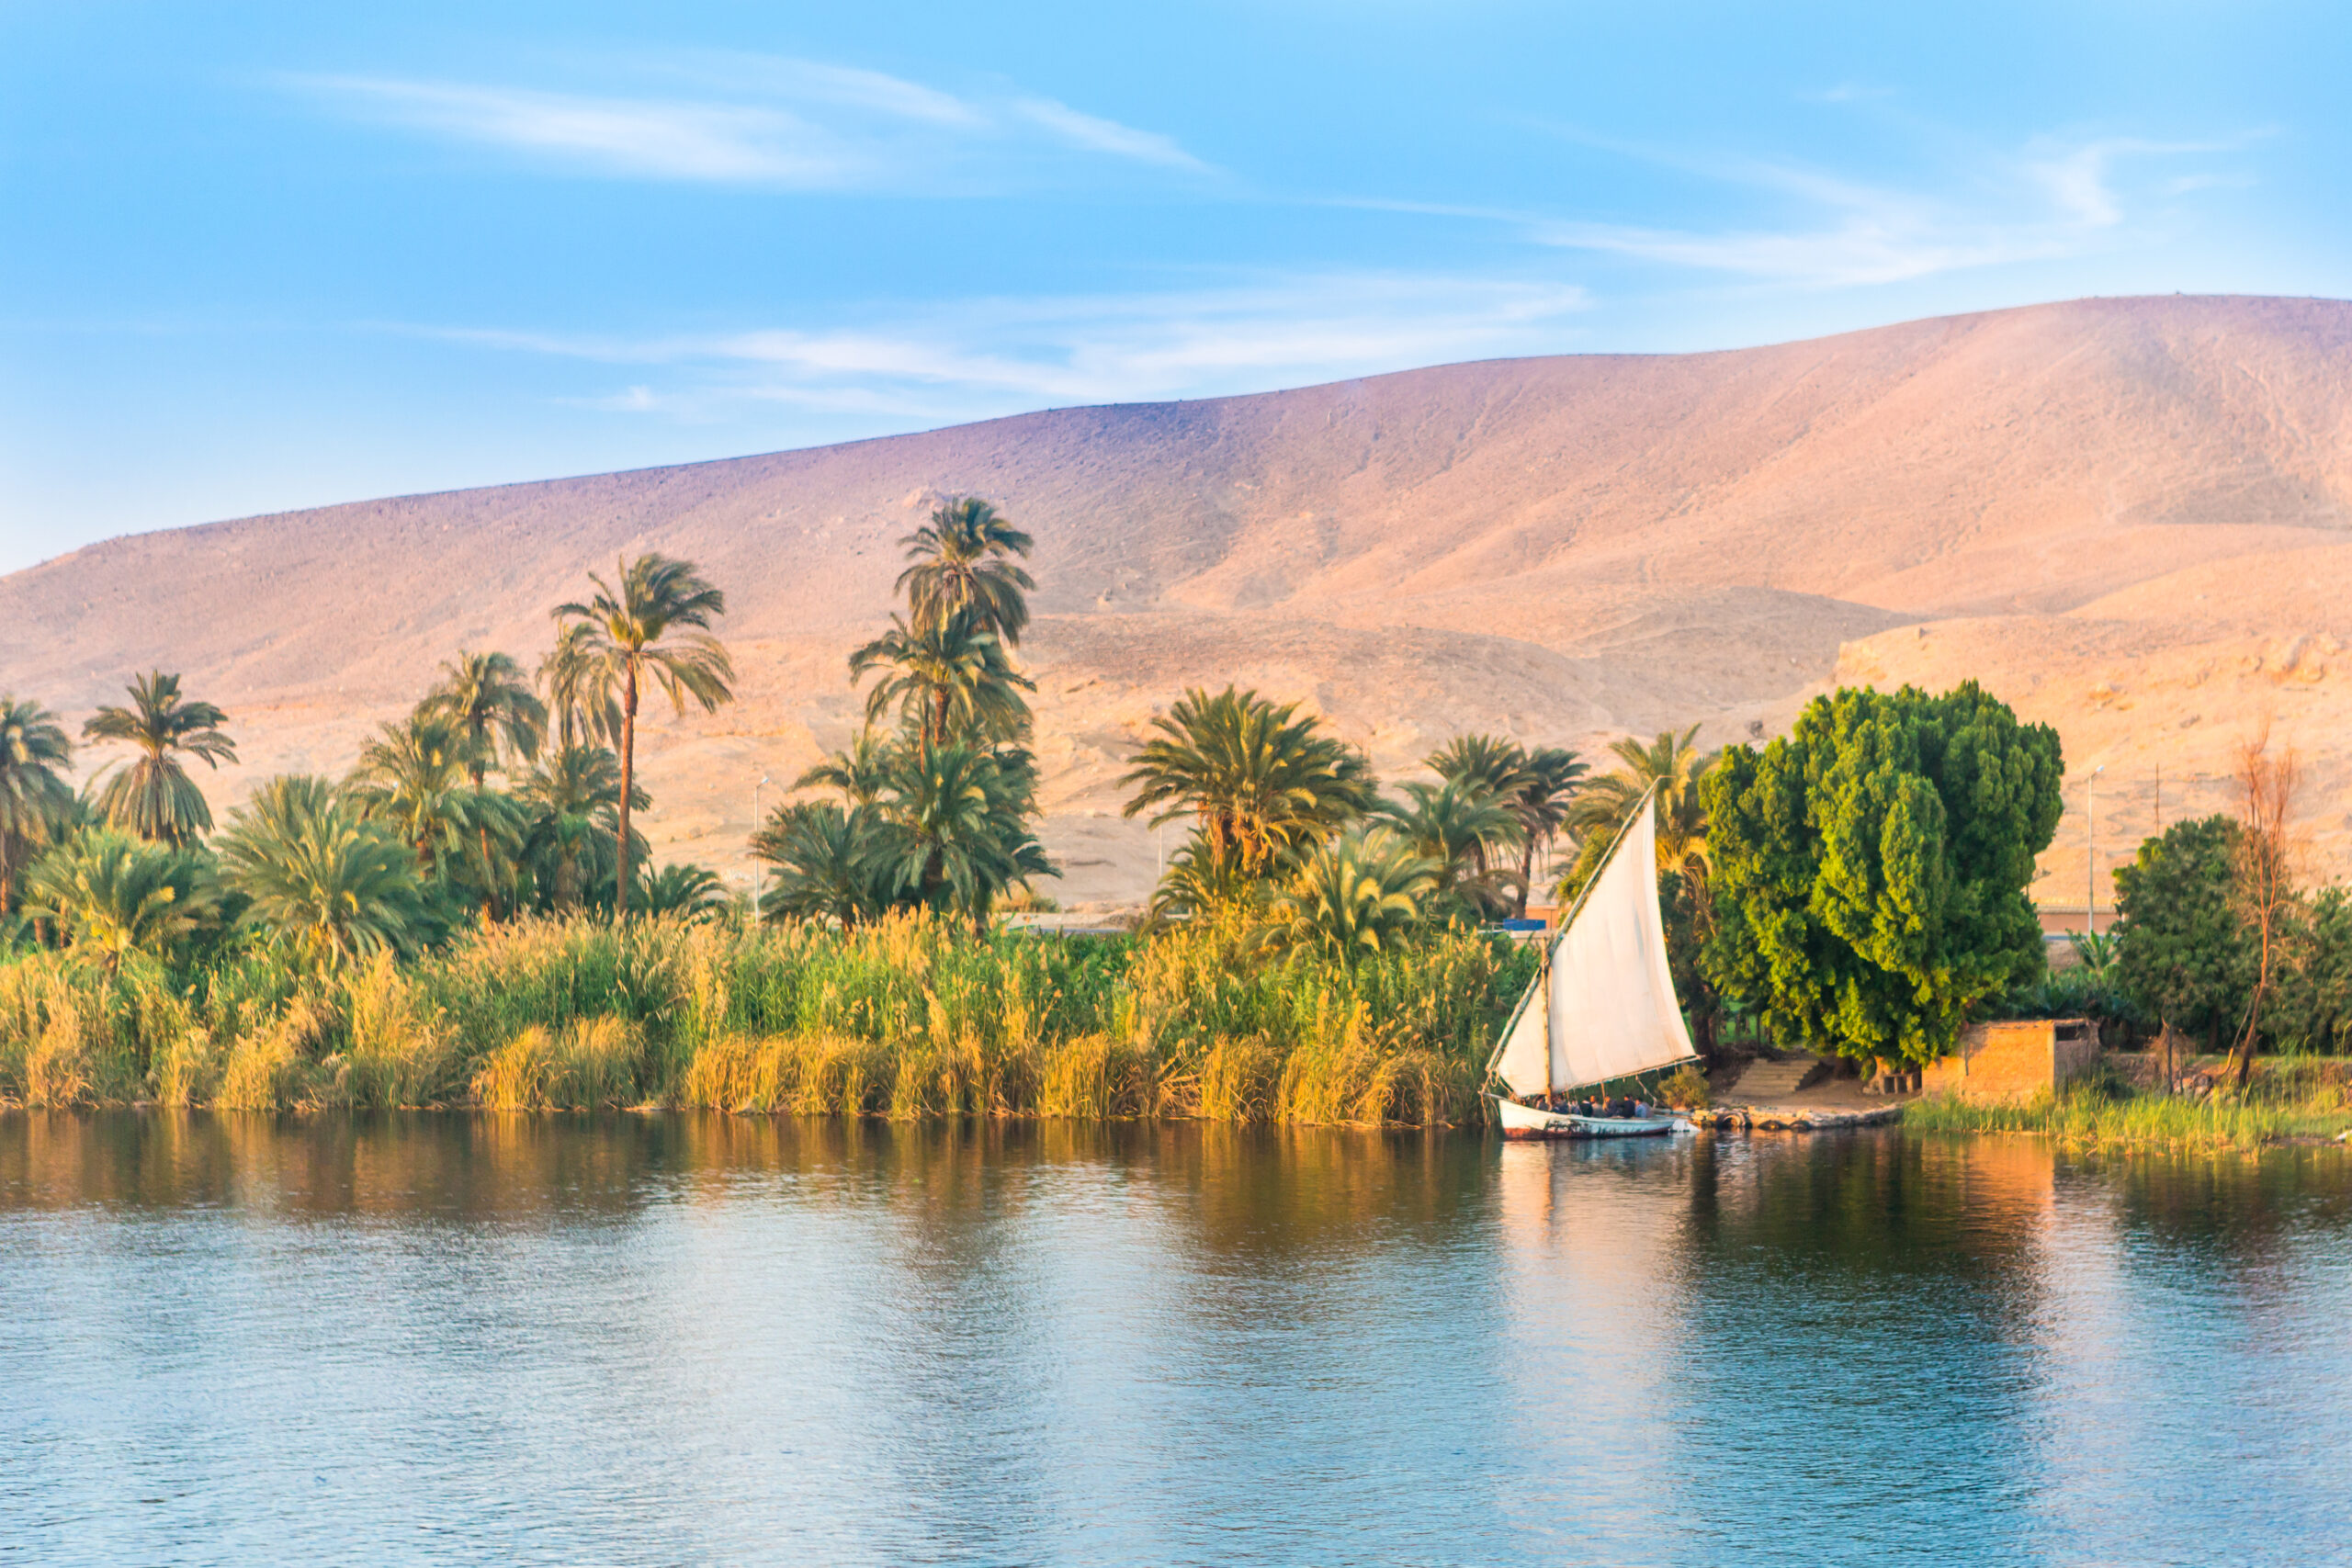 Resursele biologice ale Egiptului, centrate în jurul Nilului, au reprezentat mult timp unul dintre principalele sale atuuri. Sursa foto: Dreamstime